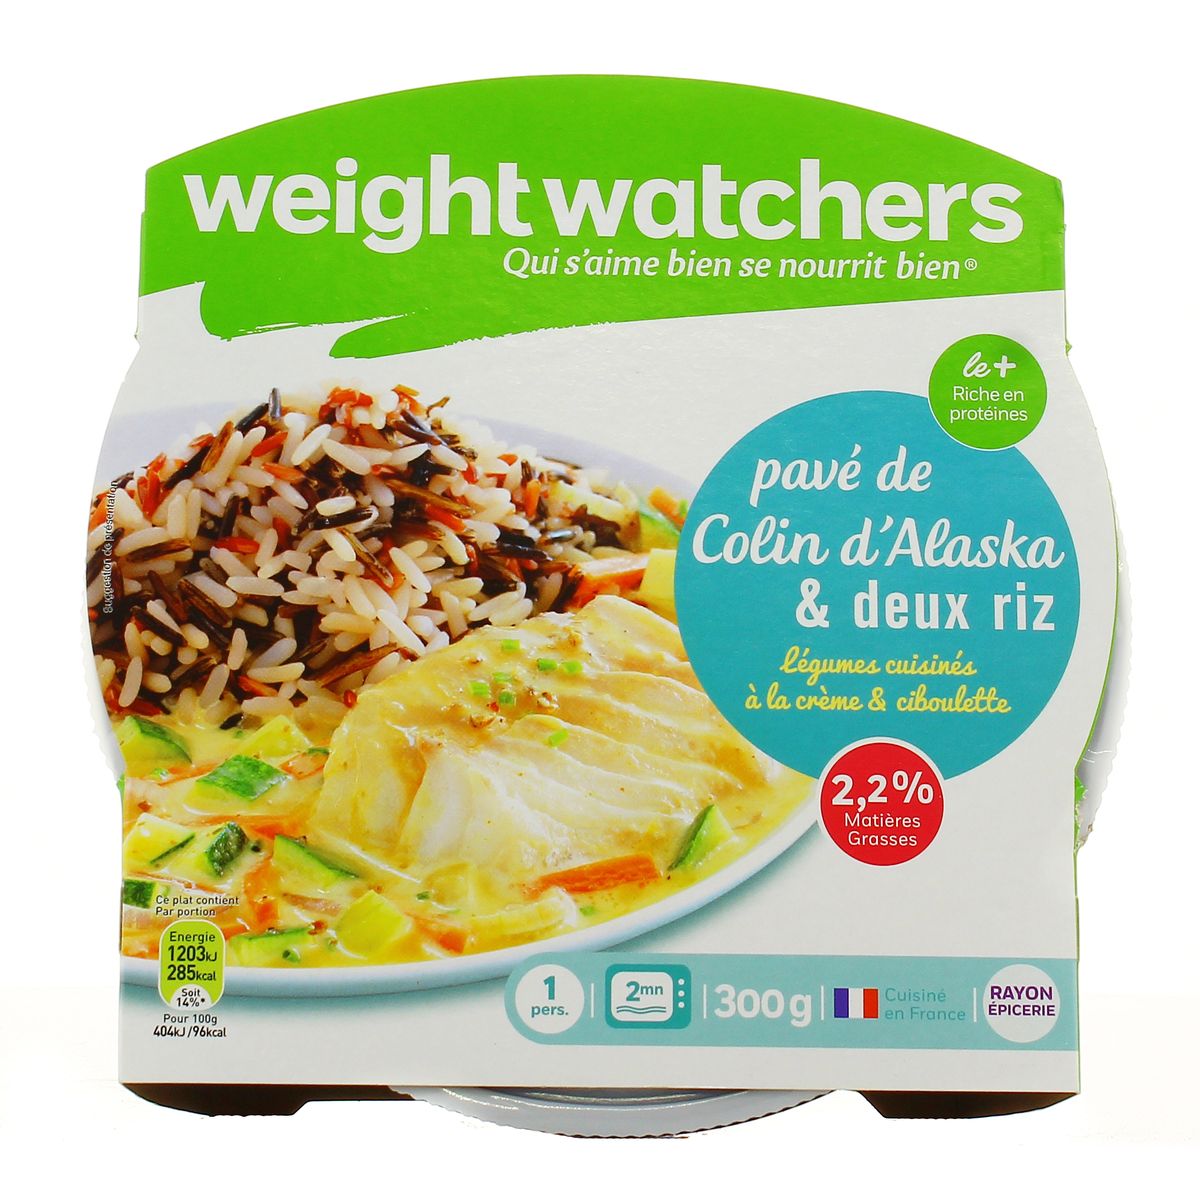 Weight Watchers Pavé de Colin, Légumes cuisinés à la crème & ciboulette,  deux riz